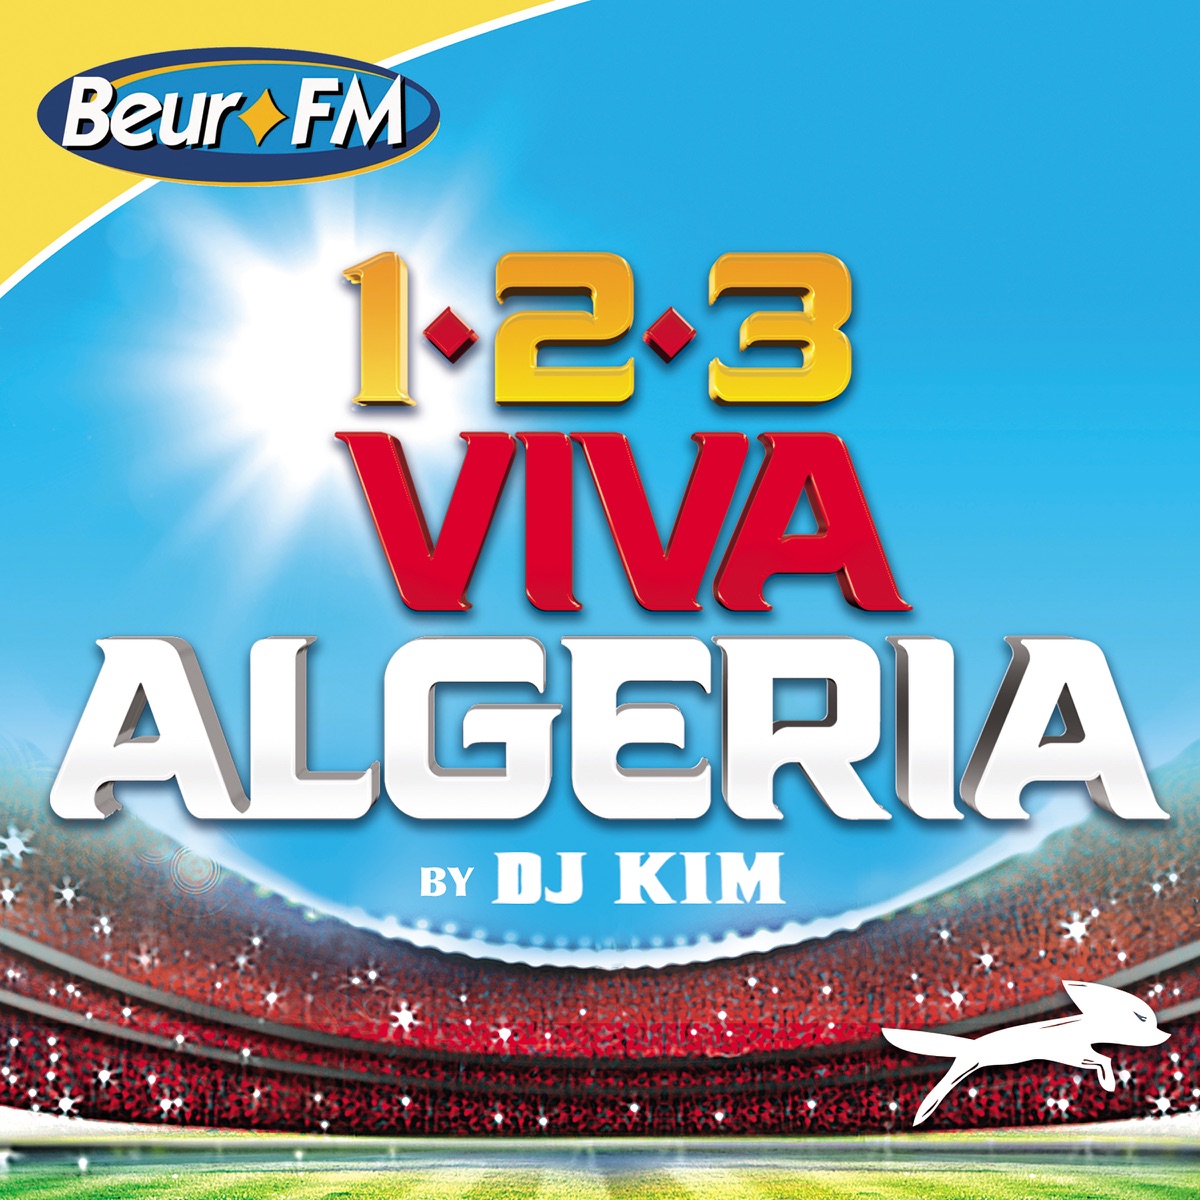 DJ Kim présente 123 Viva Algeria - Album by DJ Kim - Apple Music